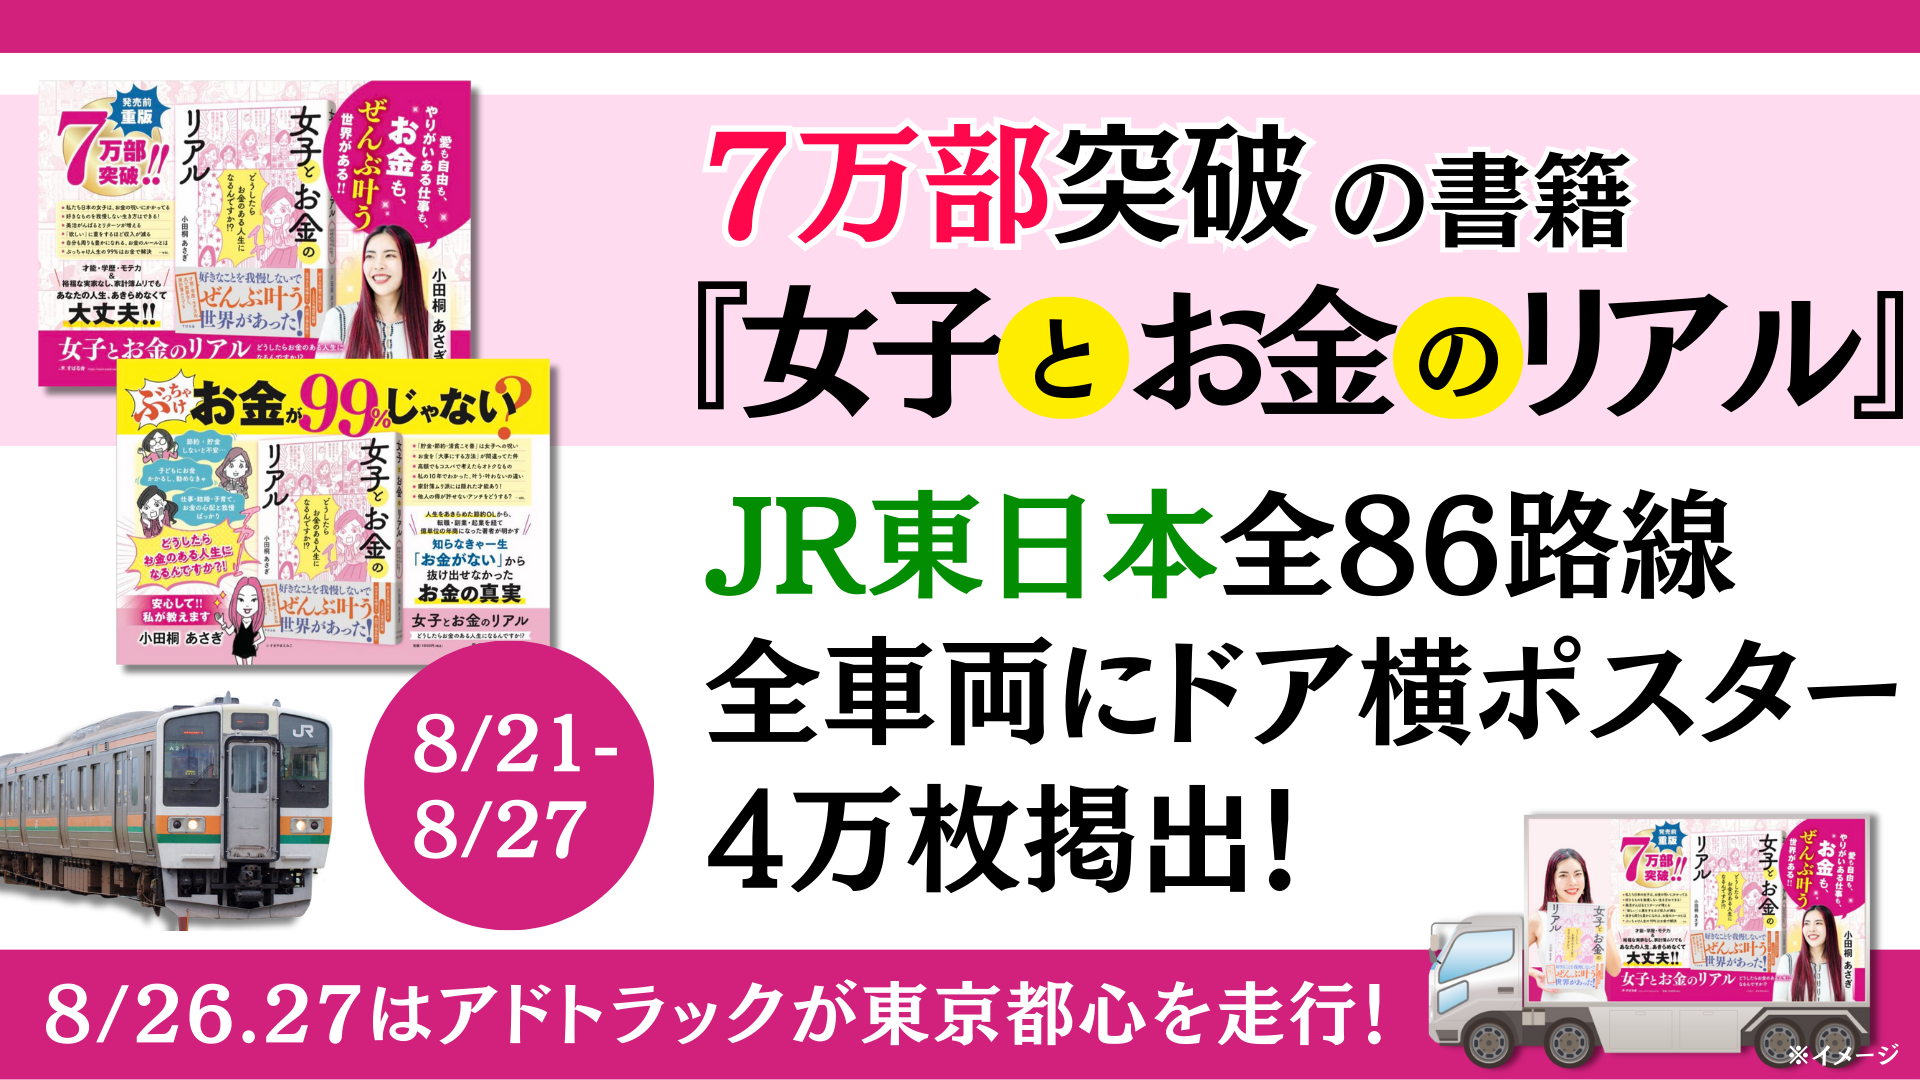 7万部突破の書籍『女子とお金のリアル』 JR東日本全86路線・全車両に